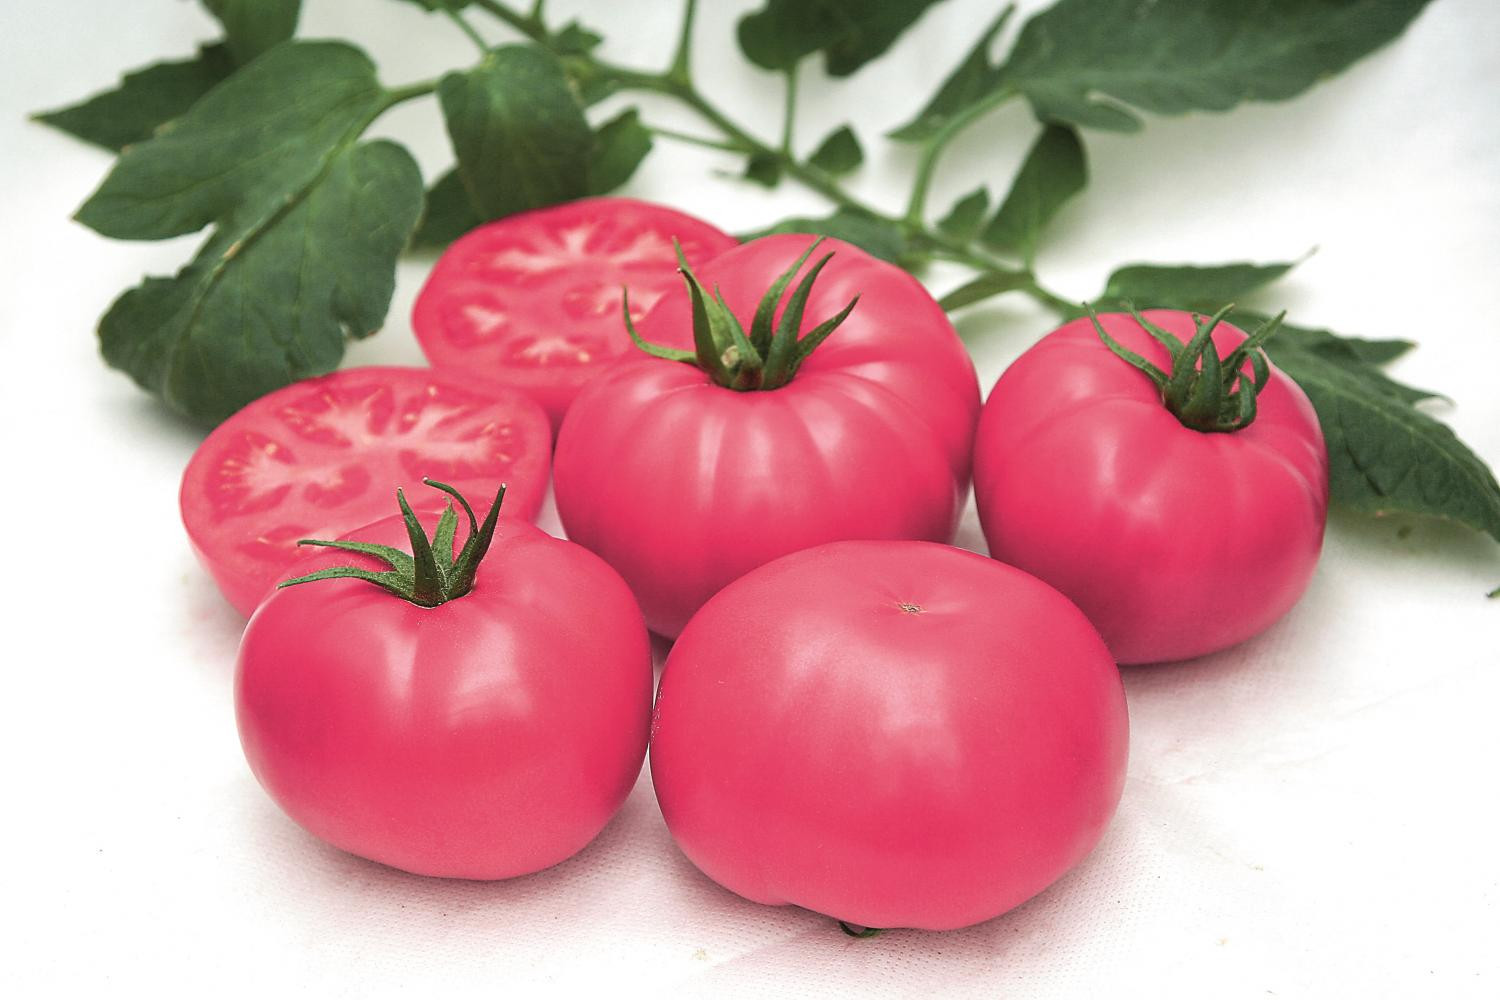 Розовоплодный гибрид томата F1 Розарио обладает устойчивостью к вершинной гнили и растрескиванию плодов